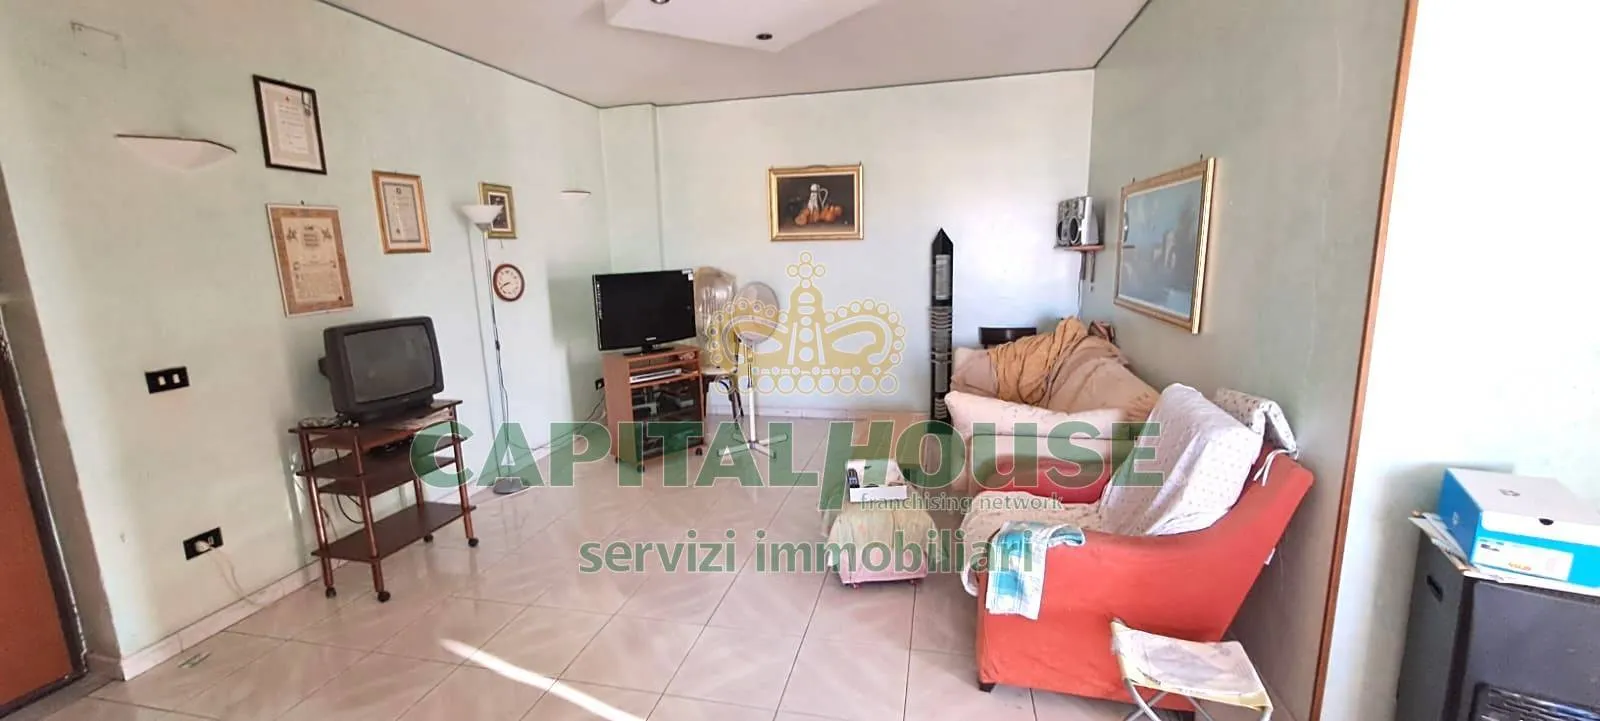 Immagine per Appartamento in vendita a Melito di Napoli